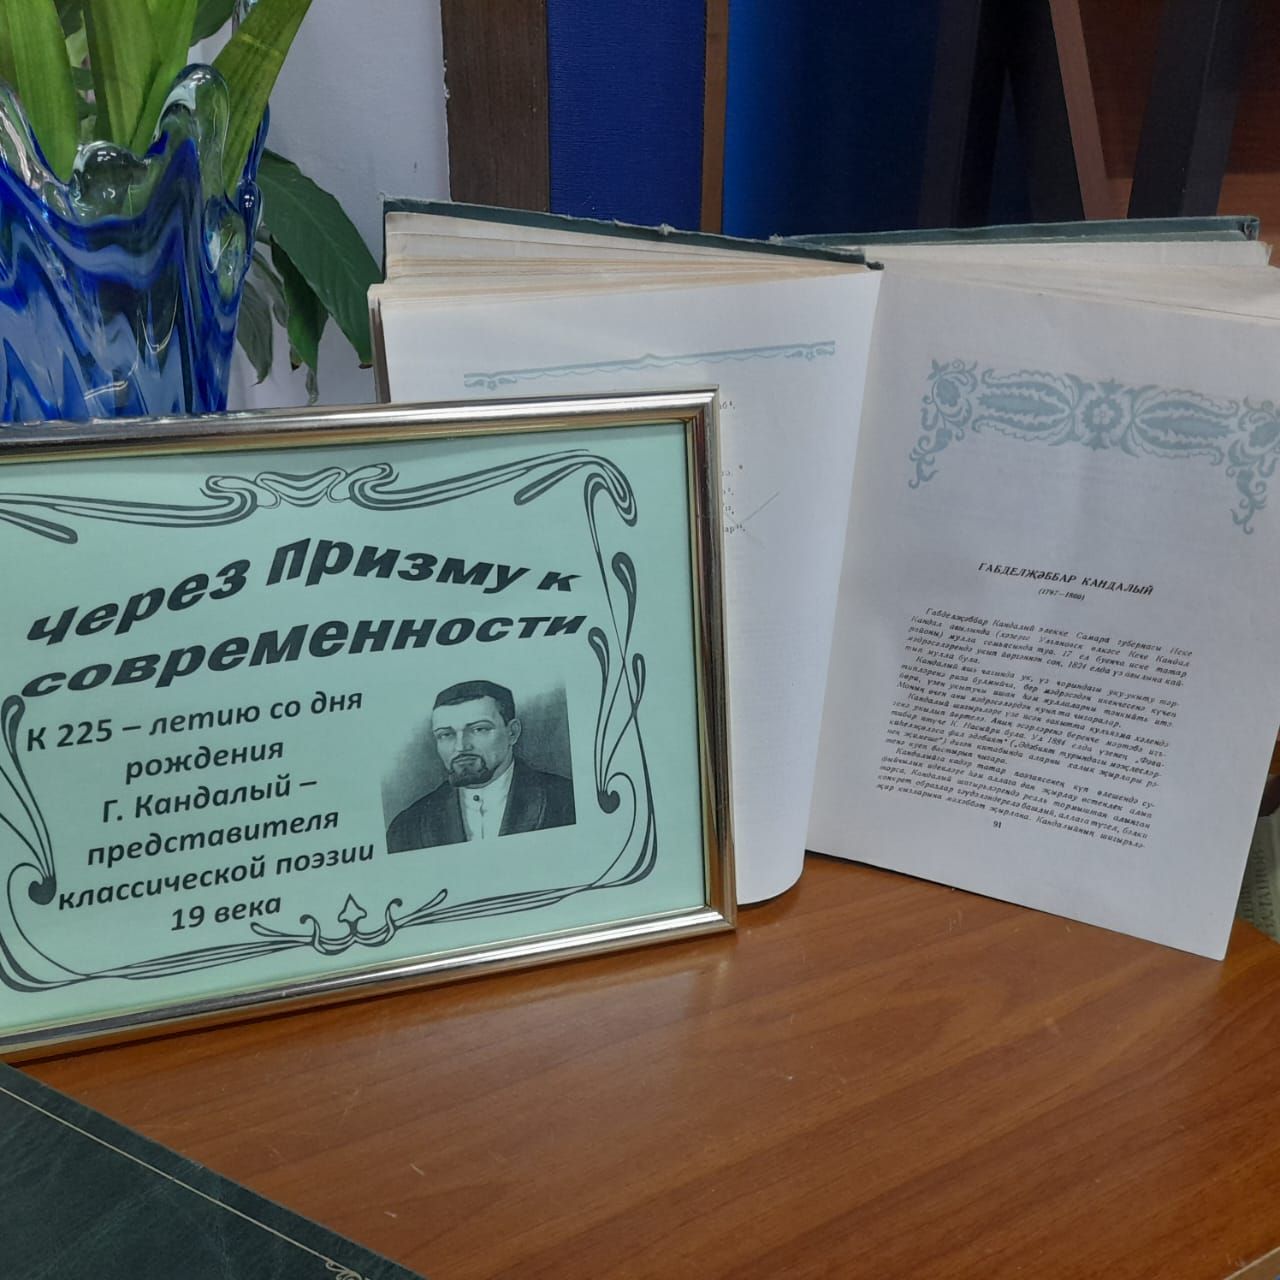 В Лаишевской библиотеке организована книжная выставка «Через призму современности»